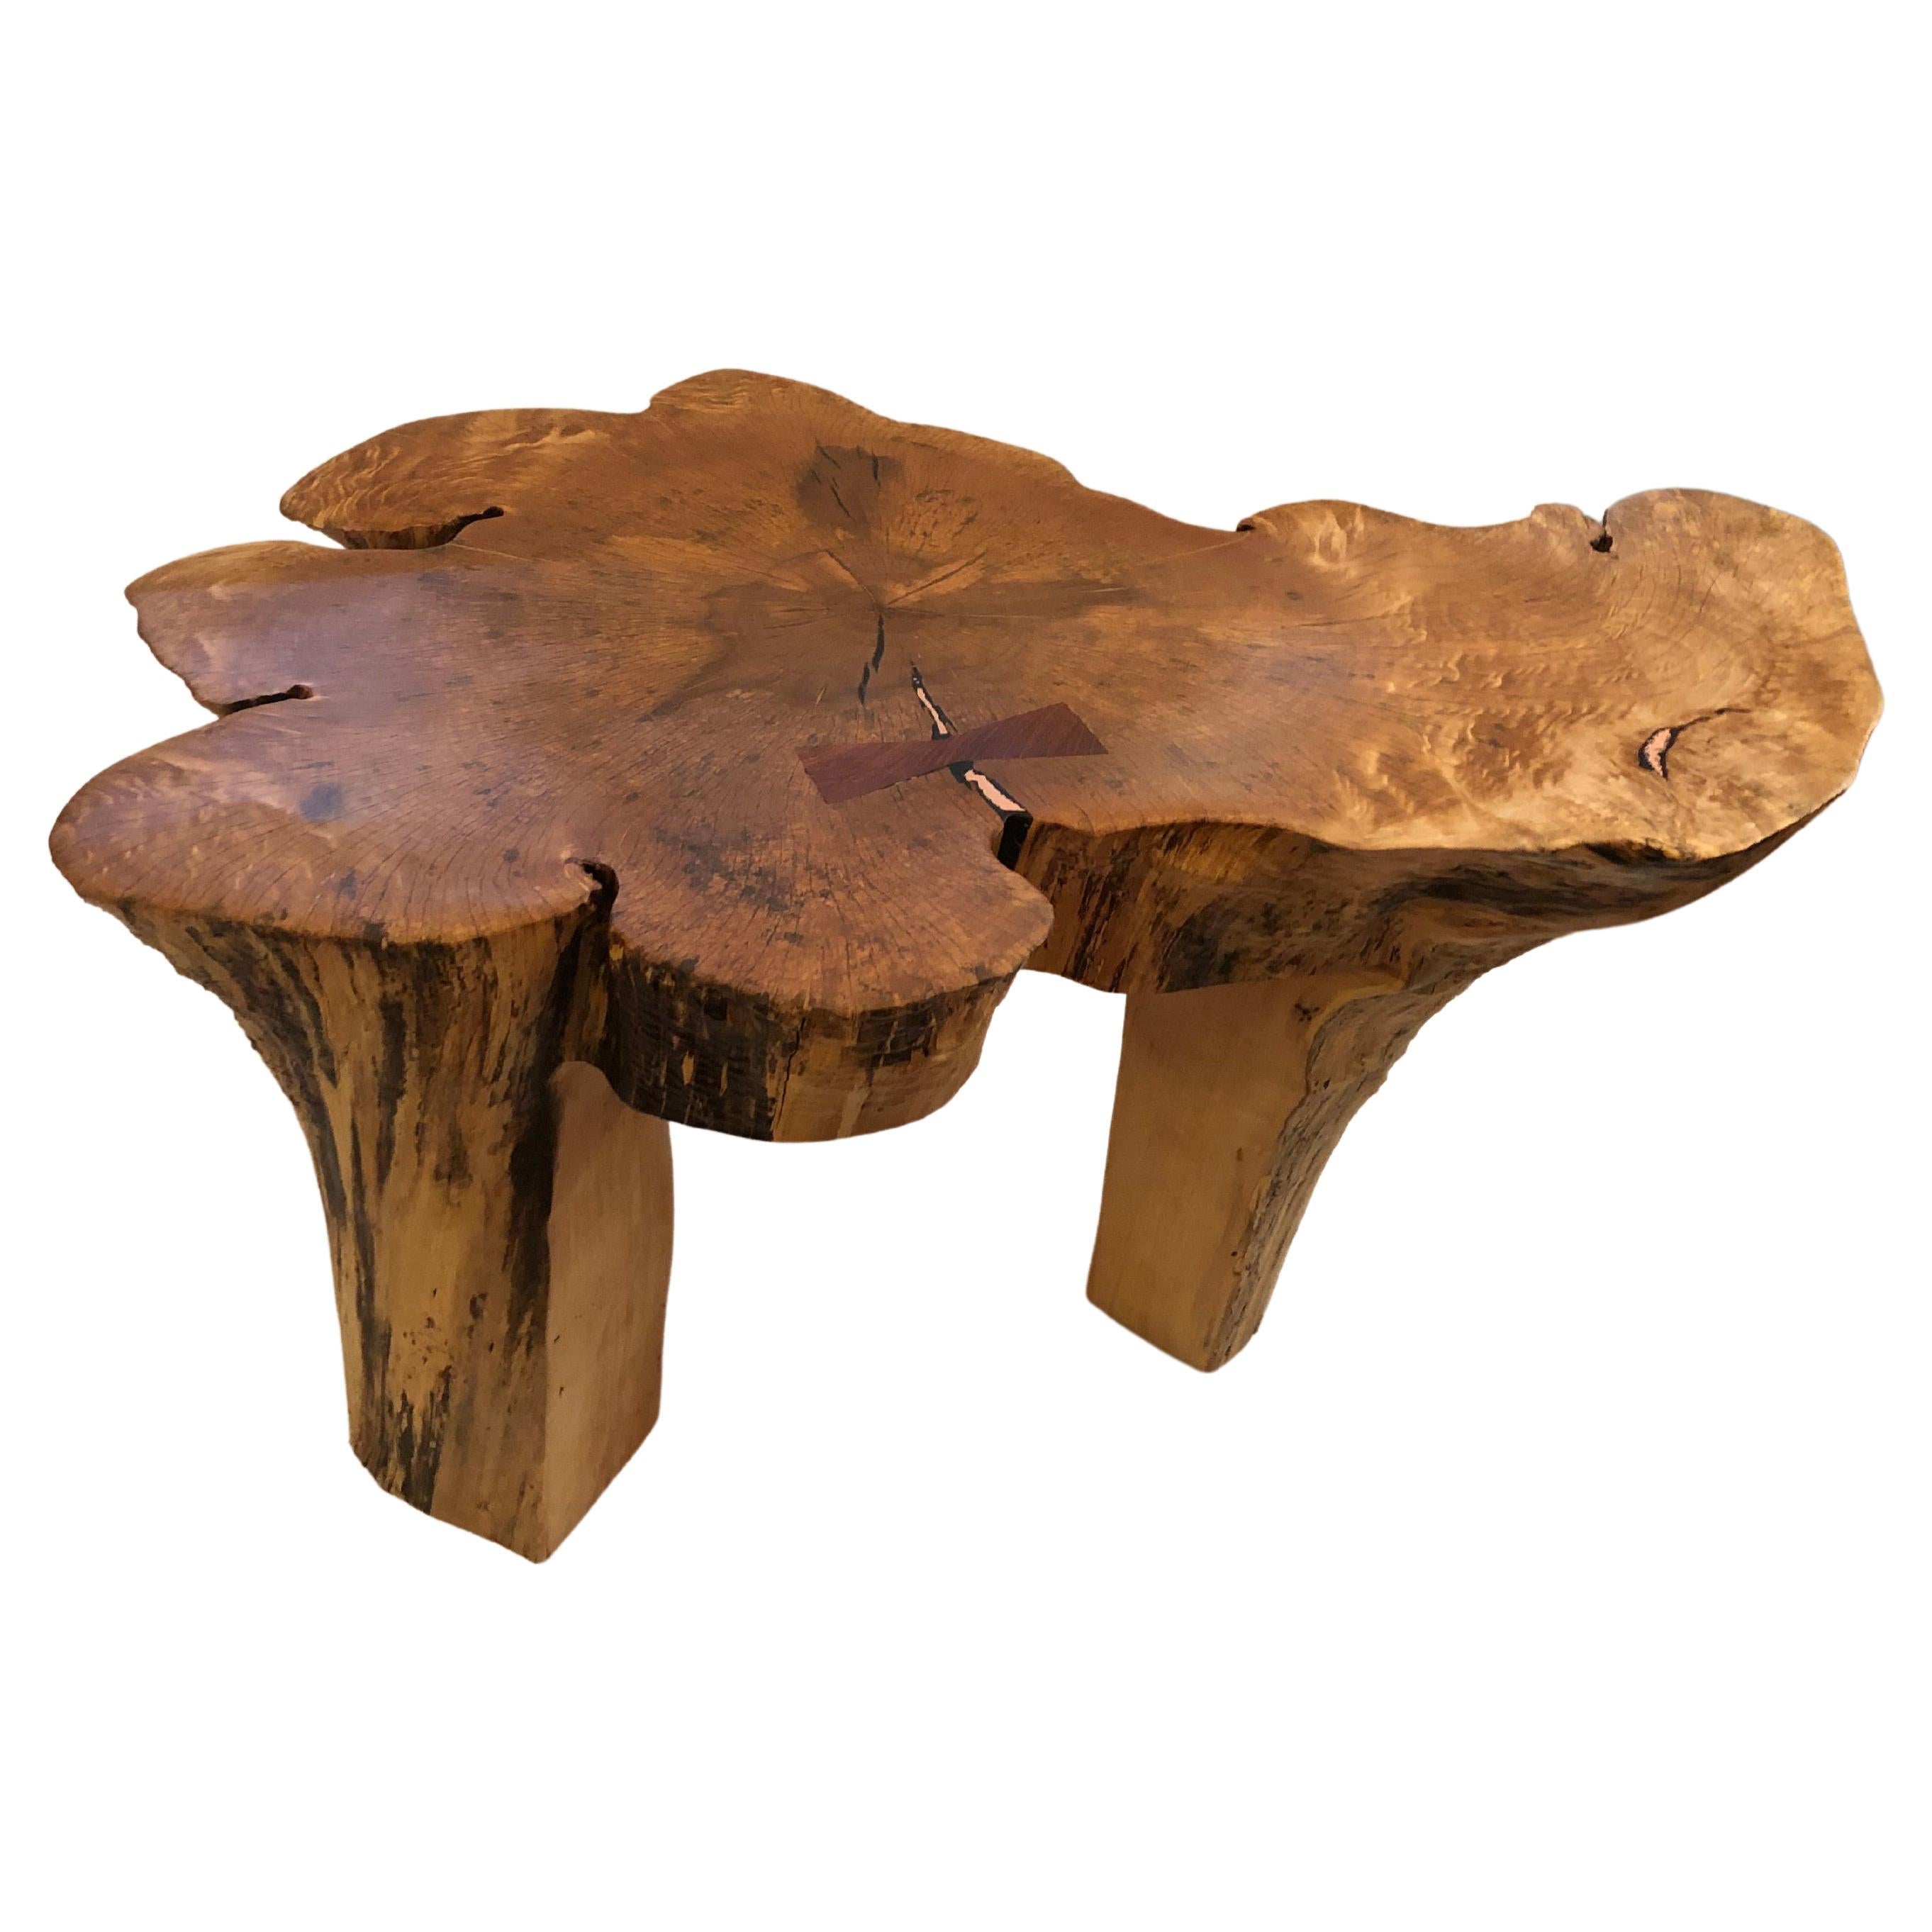 Une œuvre d'art réalisée à la main par John Braun, un travailleur du bois de NJ. Cette grande table basse organique moderne en forme d'amibe est fabriquée à partir de la base d'un érable récupéré dans le jardin de l'artiste. Ce long processus